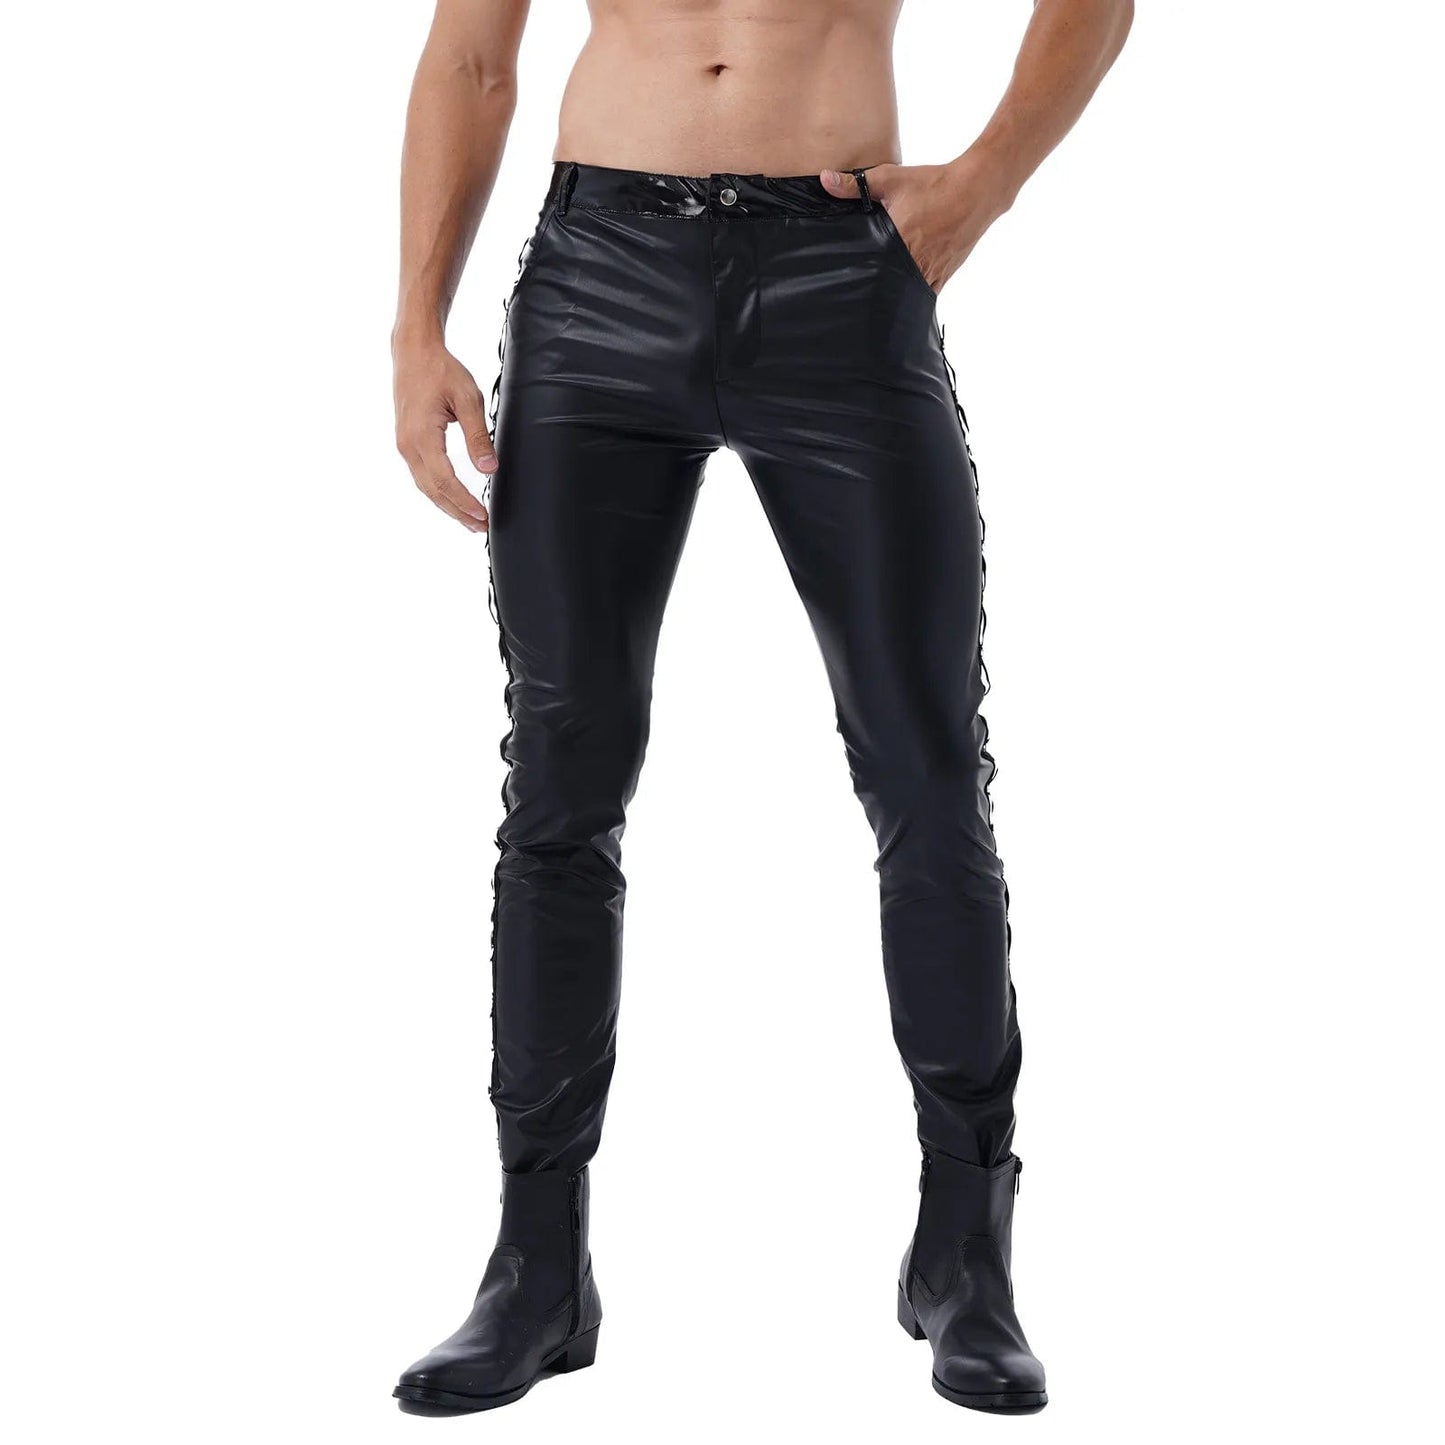 Kinky Cloth Mens Faux Leather Shiny Pants